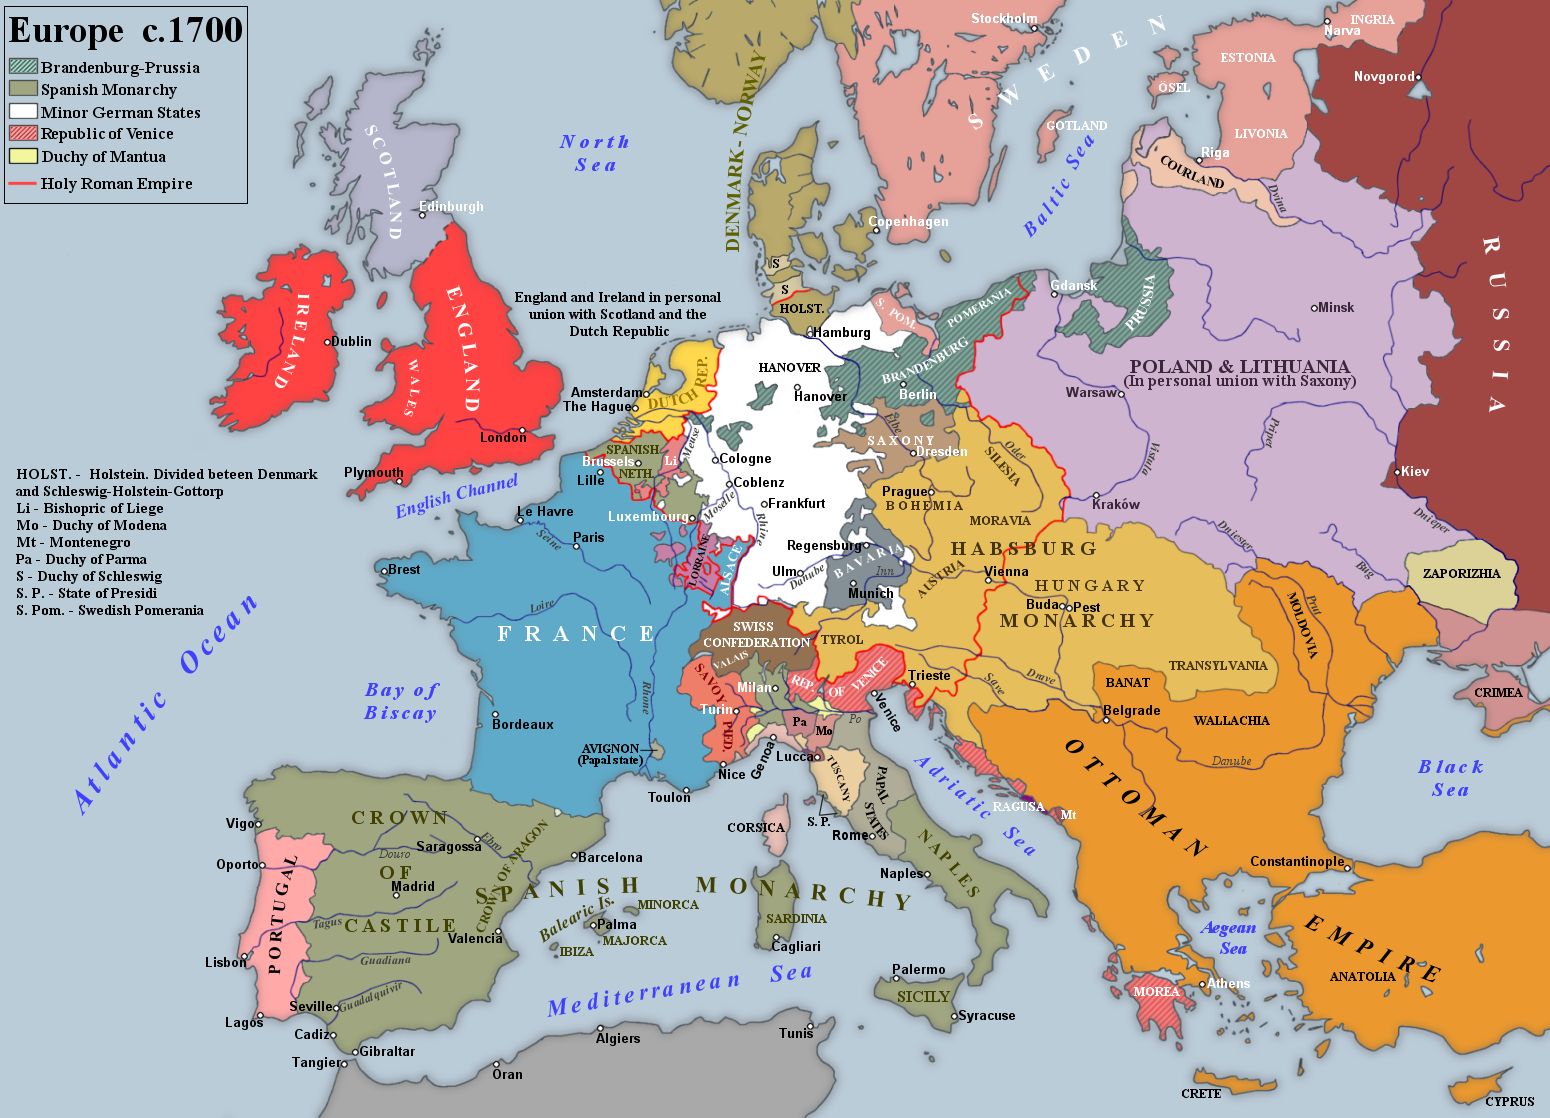 Europe circa 1700